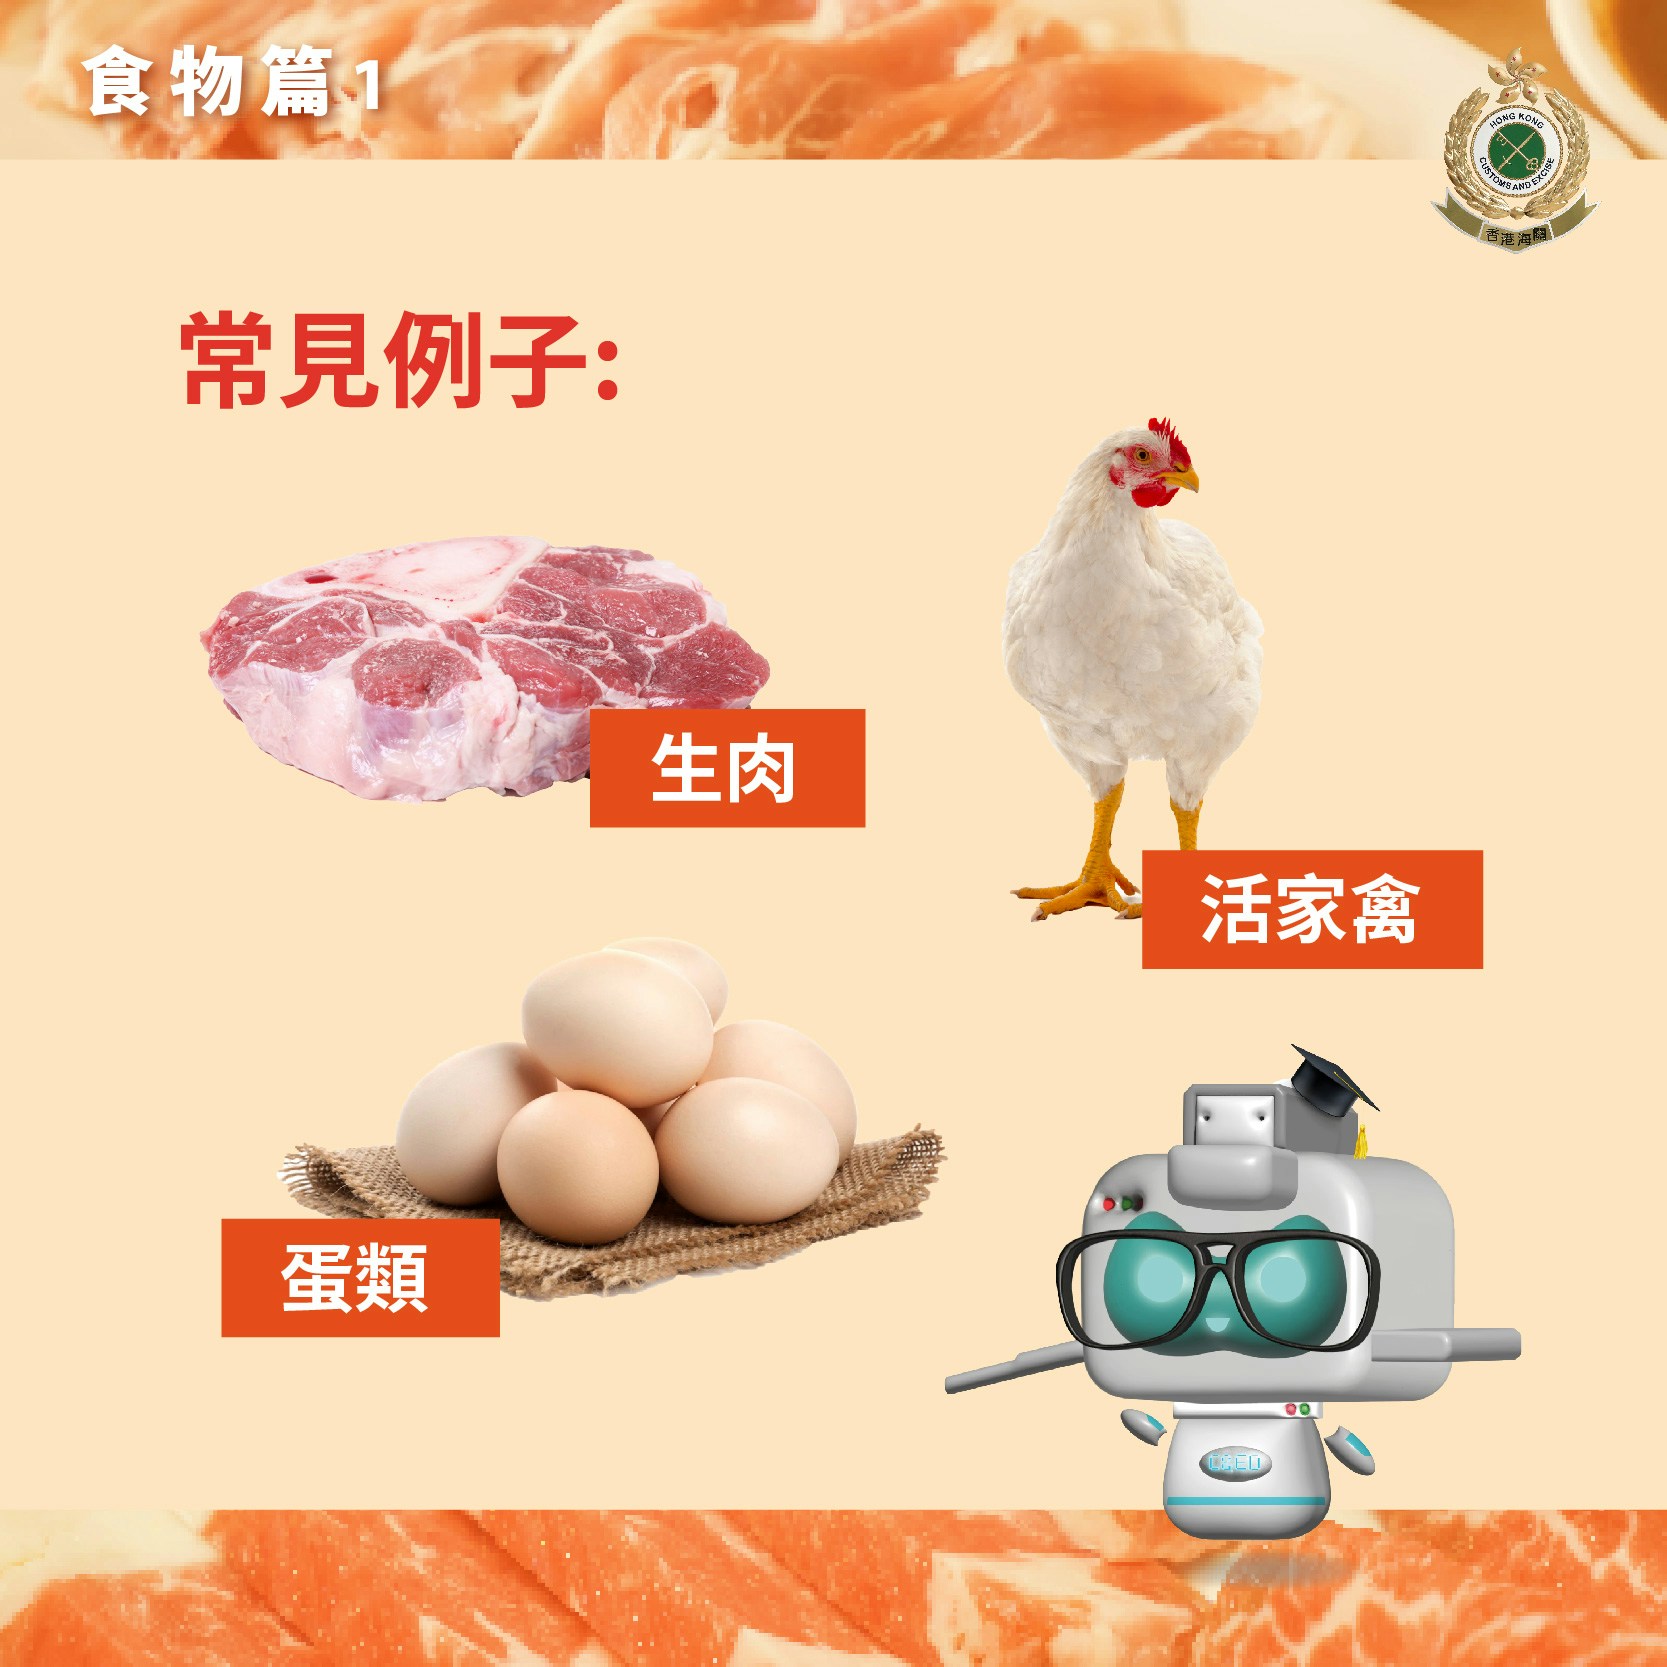 香港海关制作「跨境消费咪乱带」食物篇提示。(香港海关Facebook专页图片）